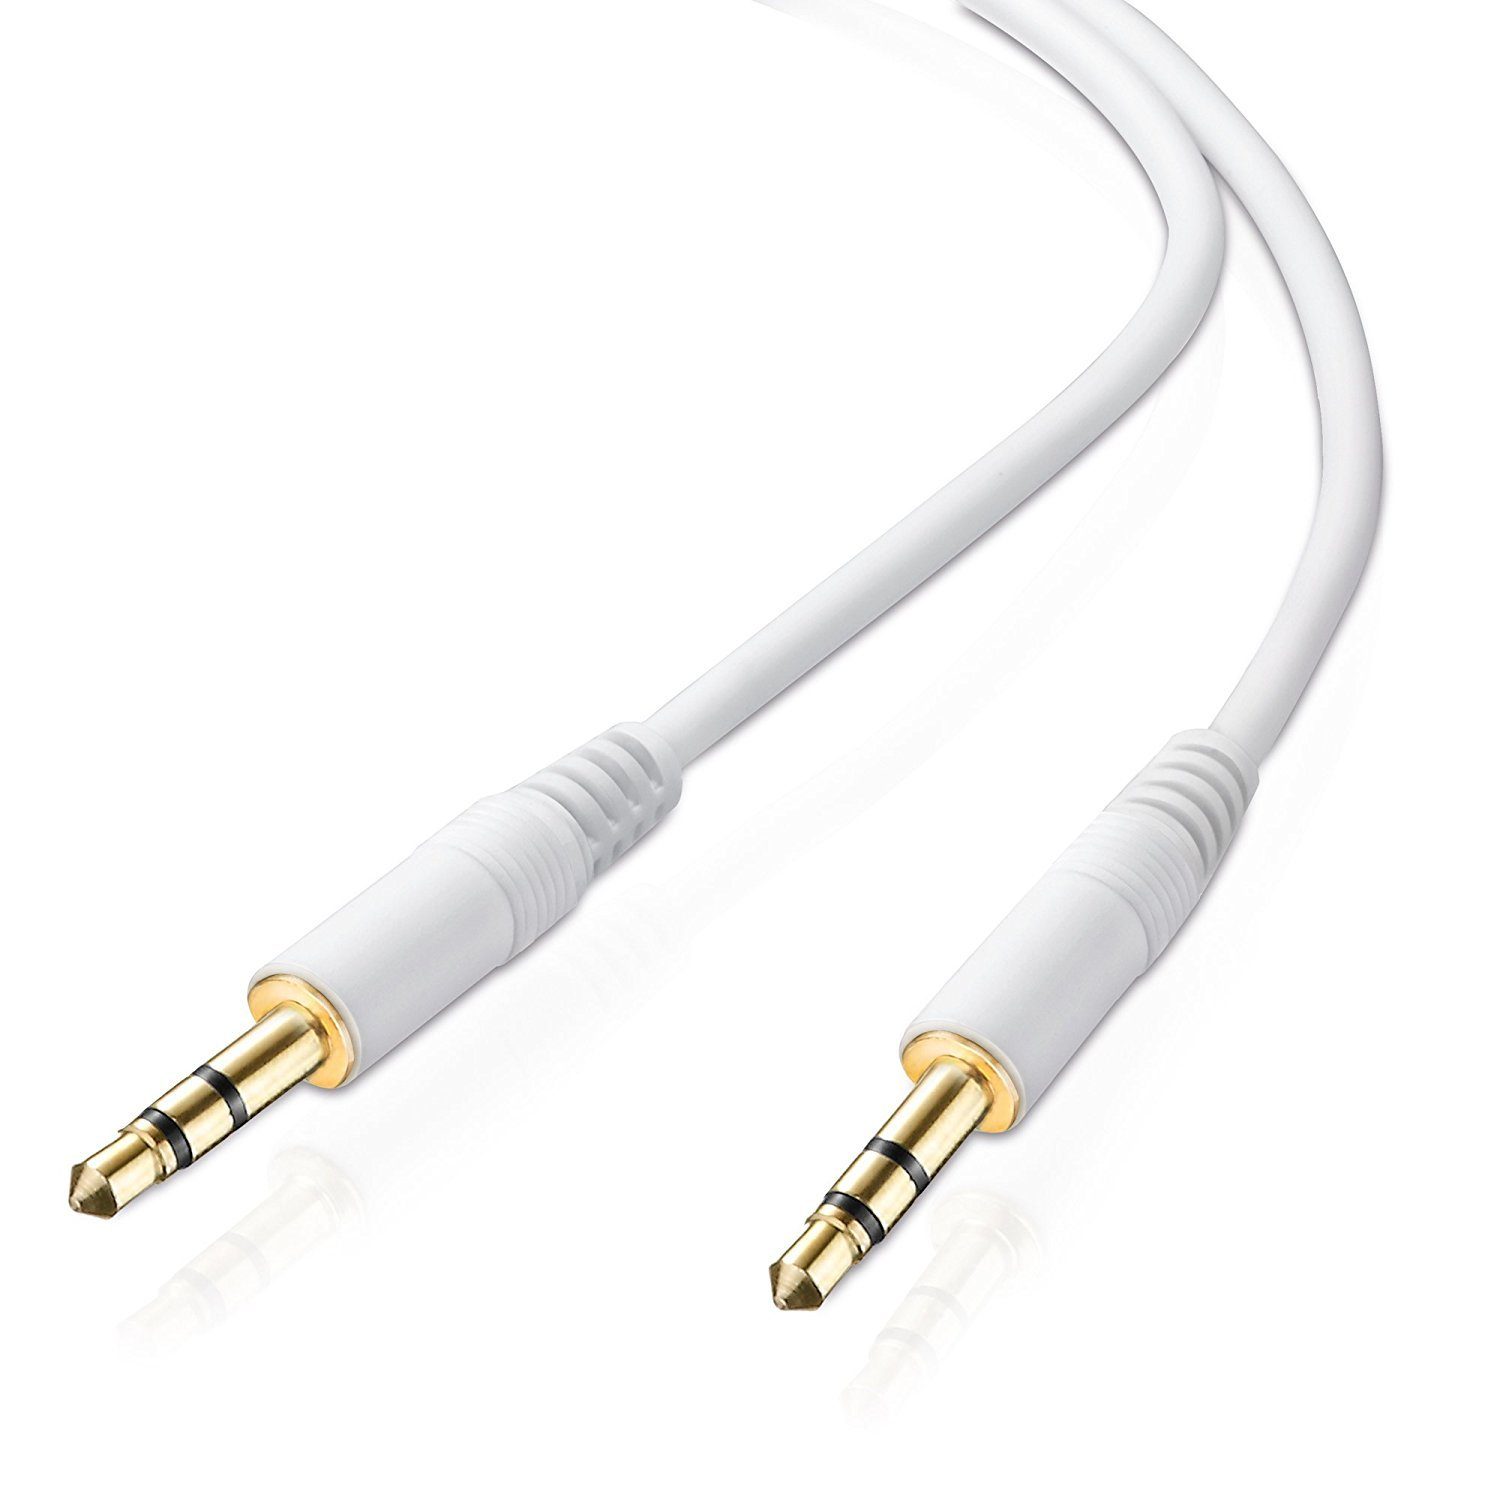 adaptare adaptare 2 m Stereo-Aux-Kabel 2-mal 3,5-mm-Stecker Klinke  vergoldet Audio-Kabel, weißes Klinkenkabel mit sehr dünnen elegant  wirkenden vergoldeten Steckern